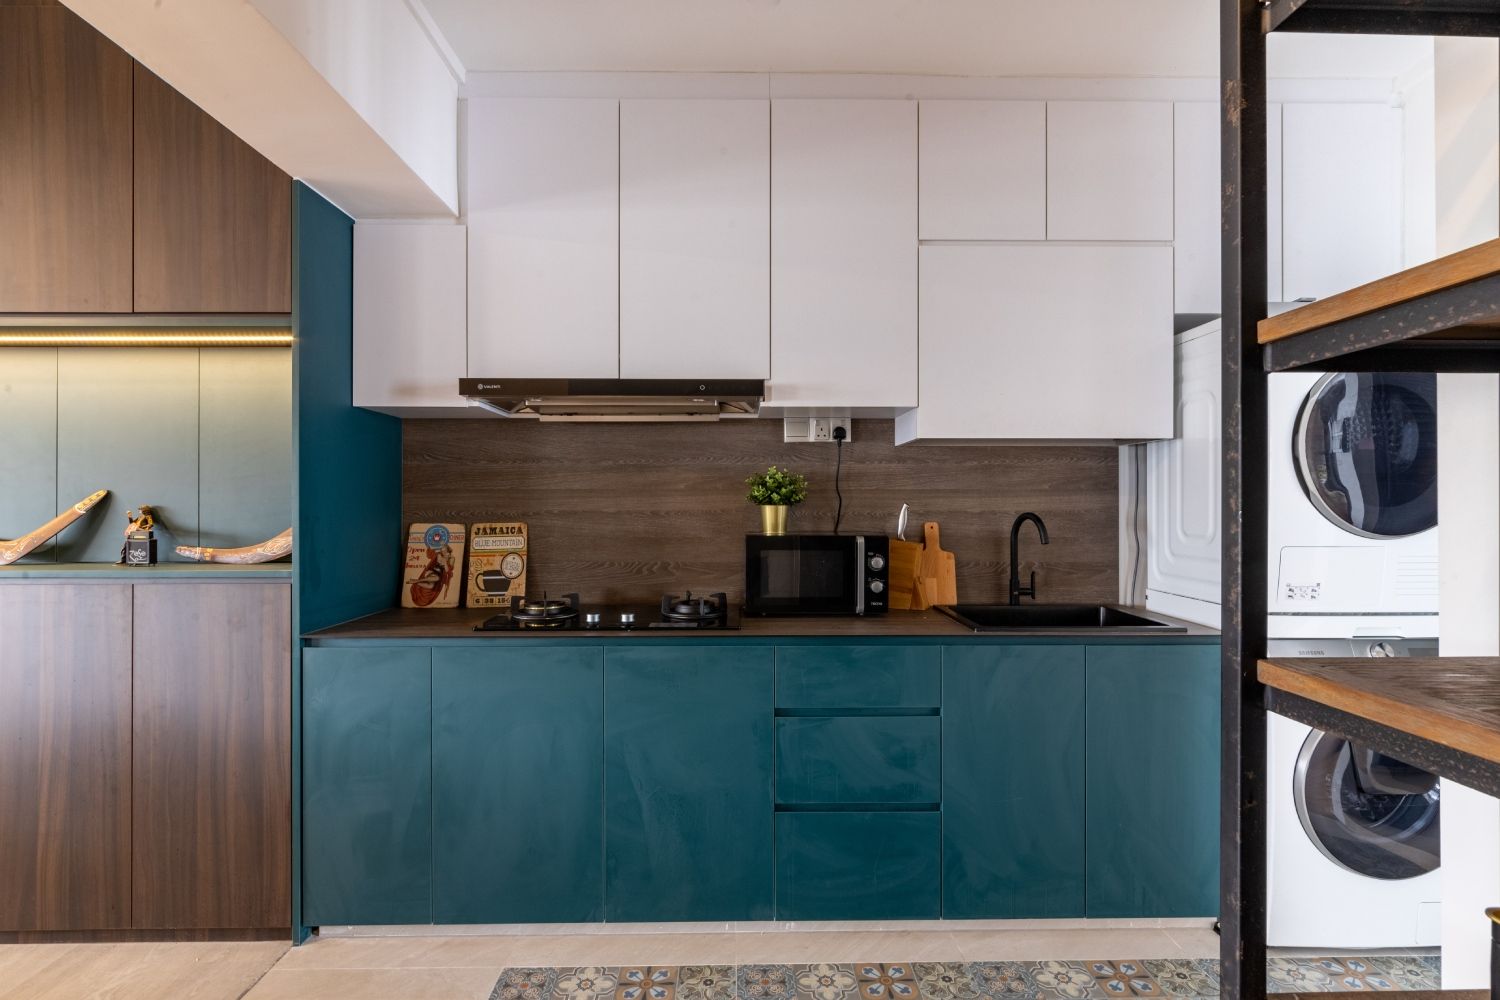 Modern Kitchen Design With White And Dark Blue Cabinets